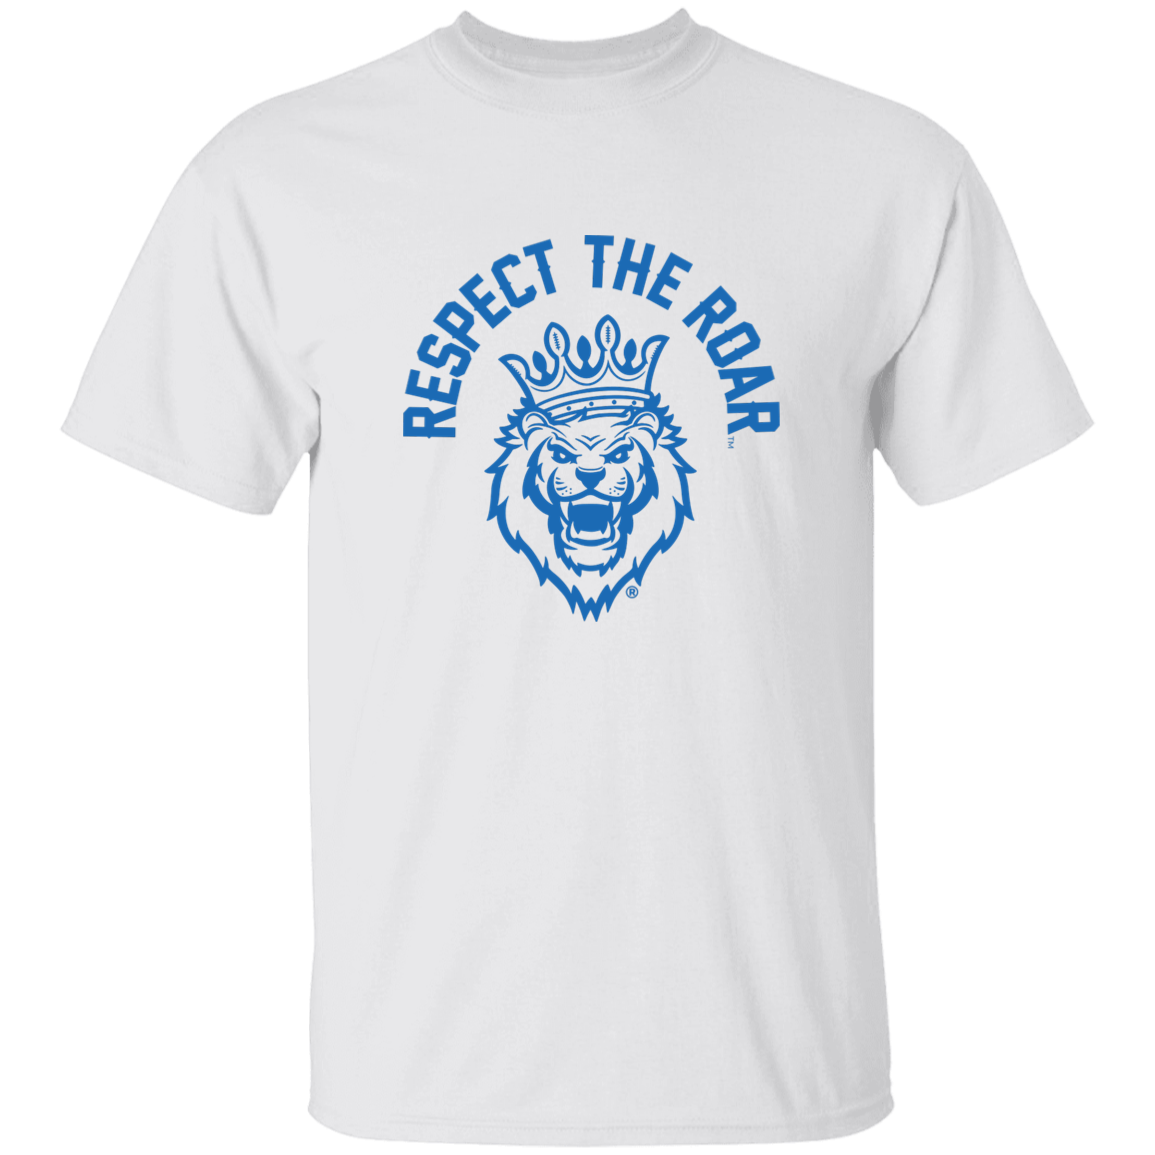 Respect The Roar® Men's T-Shirt